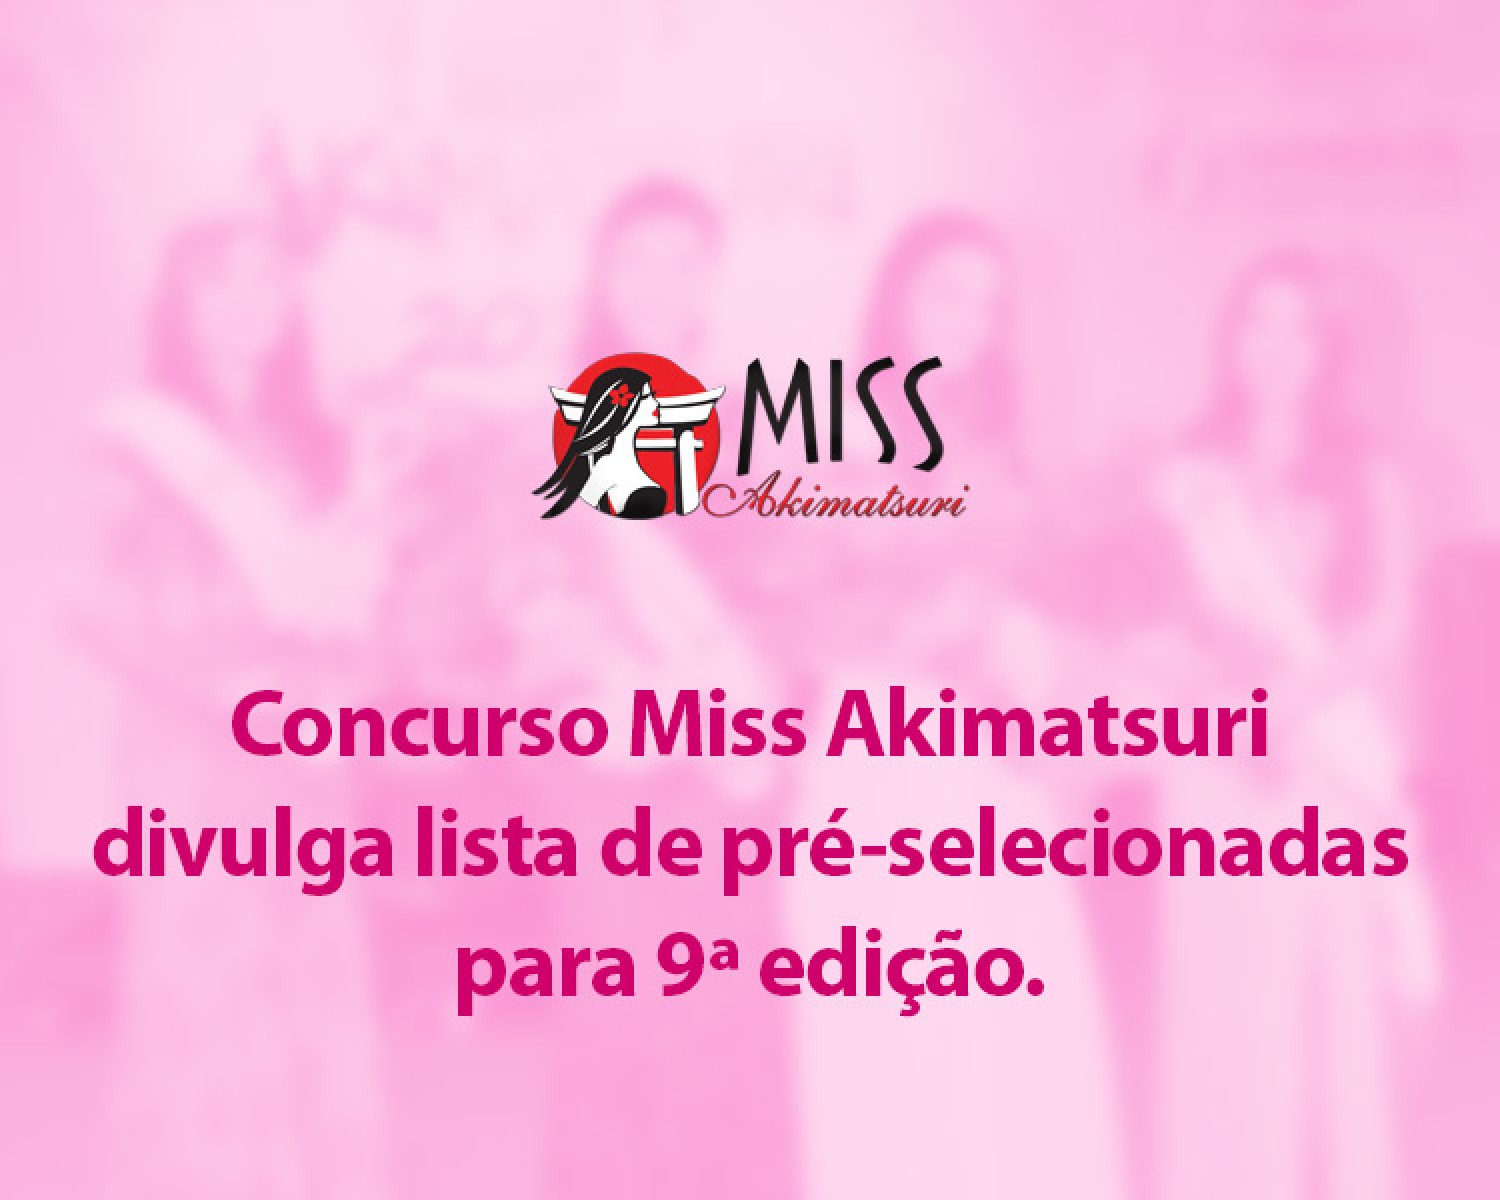 Img: Concurso Miss Akimatsuri divulga lista de pré-selecionadas para 9ª edição